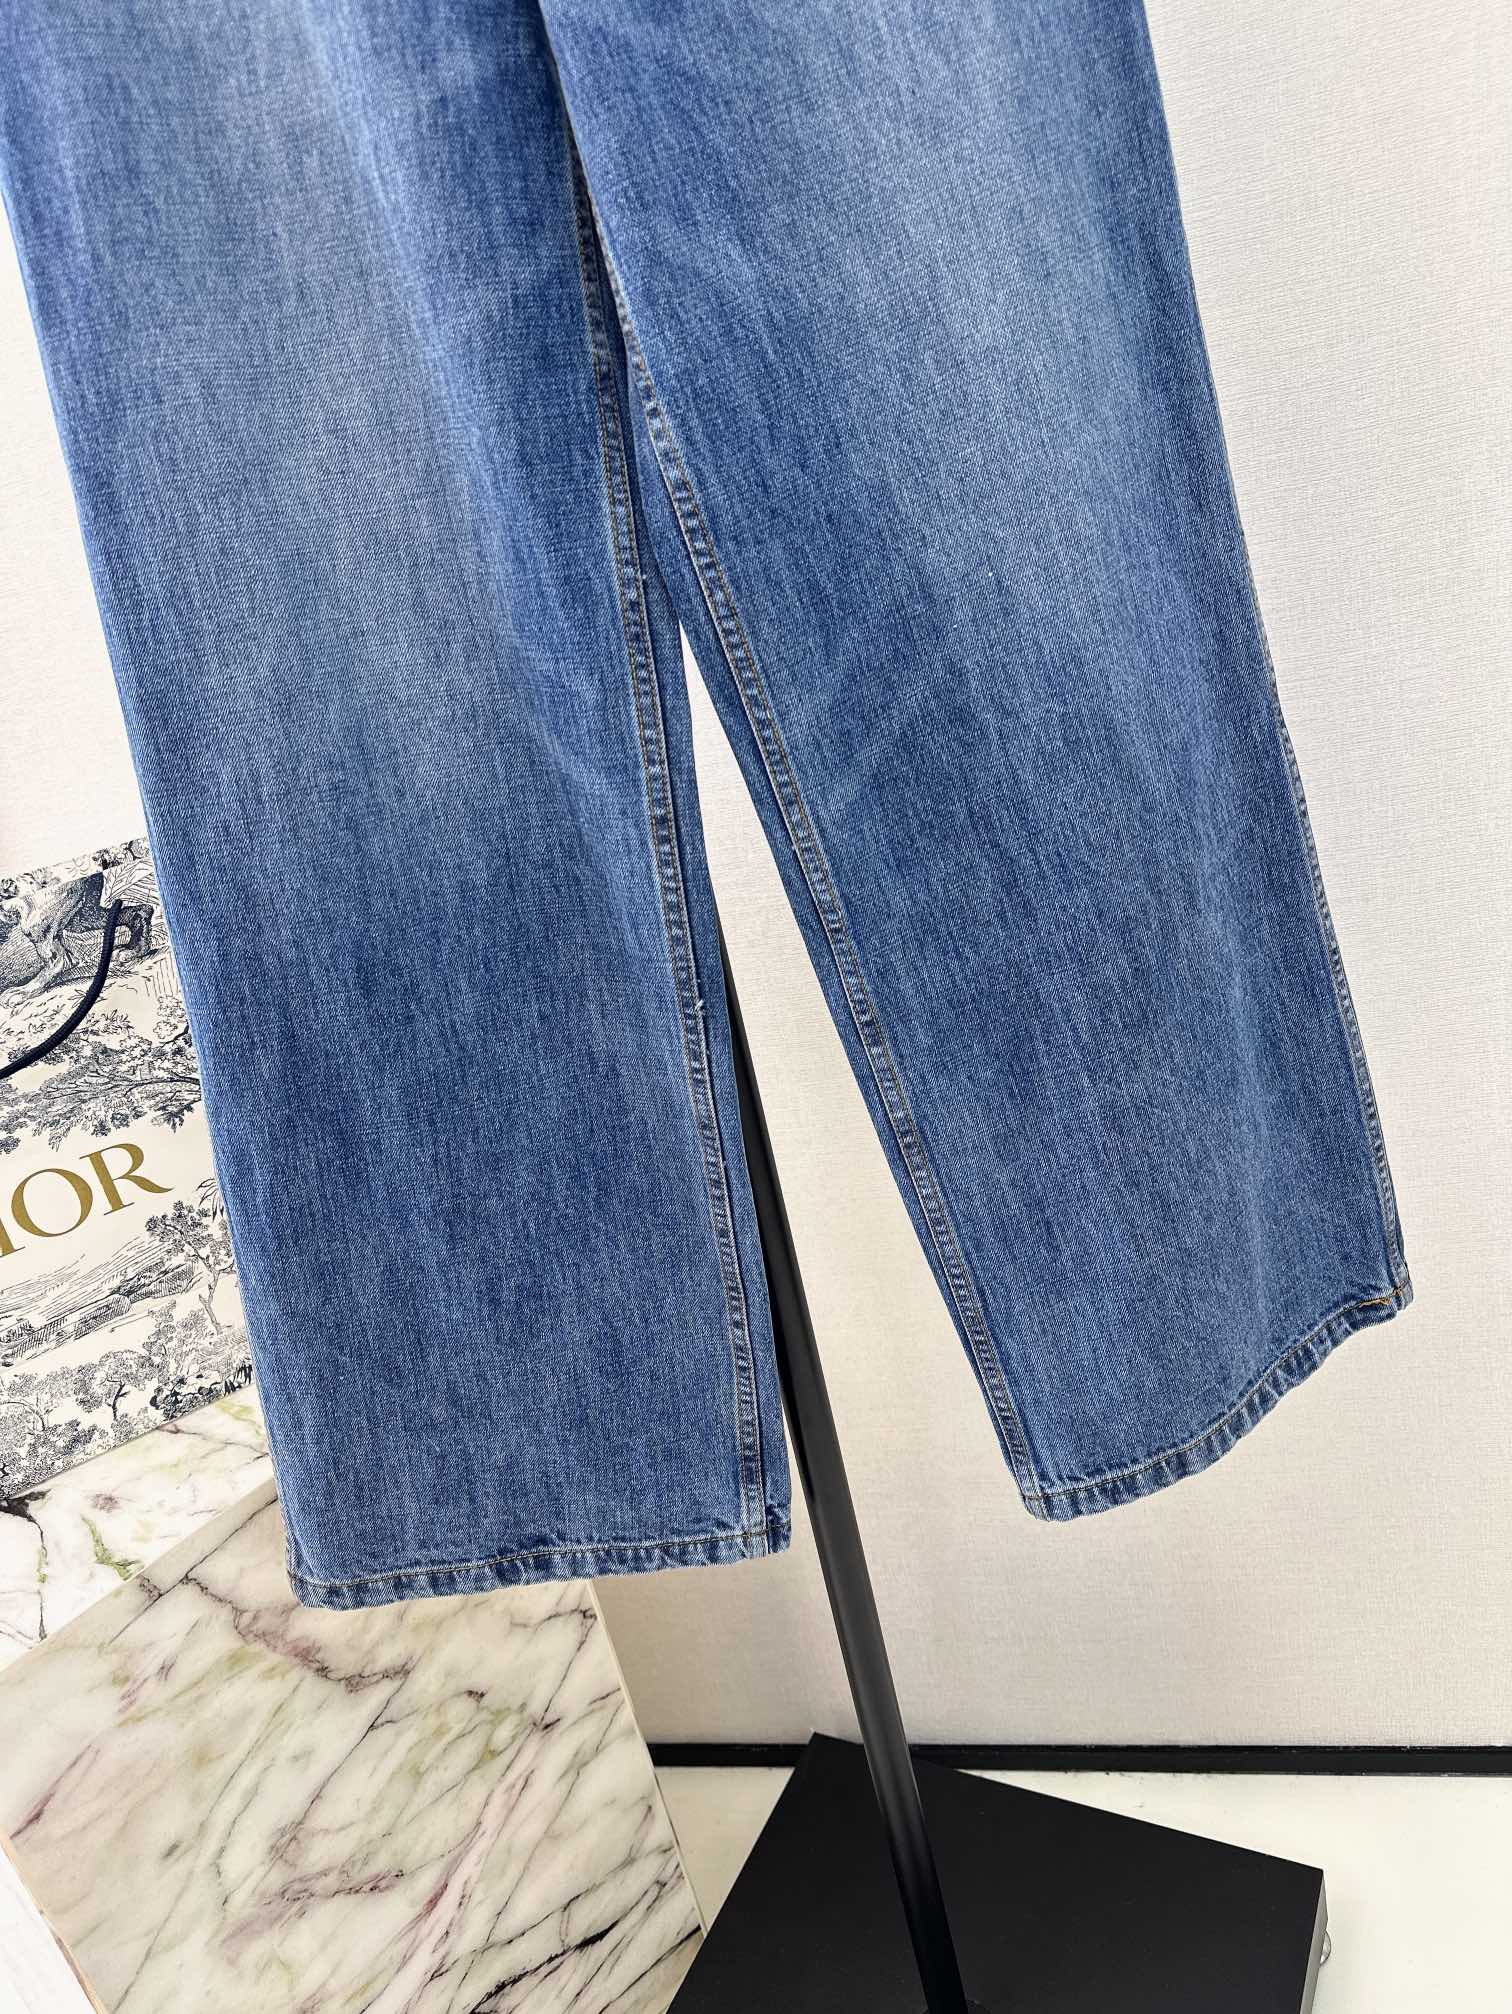 CD24Ss春夏最新款中高腰双口袋直筒牛仔裤原版定制复古蓝洗水工艺高级又时髦进口牛仔面料酵素洗水工艺衣橱